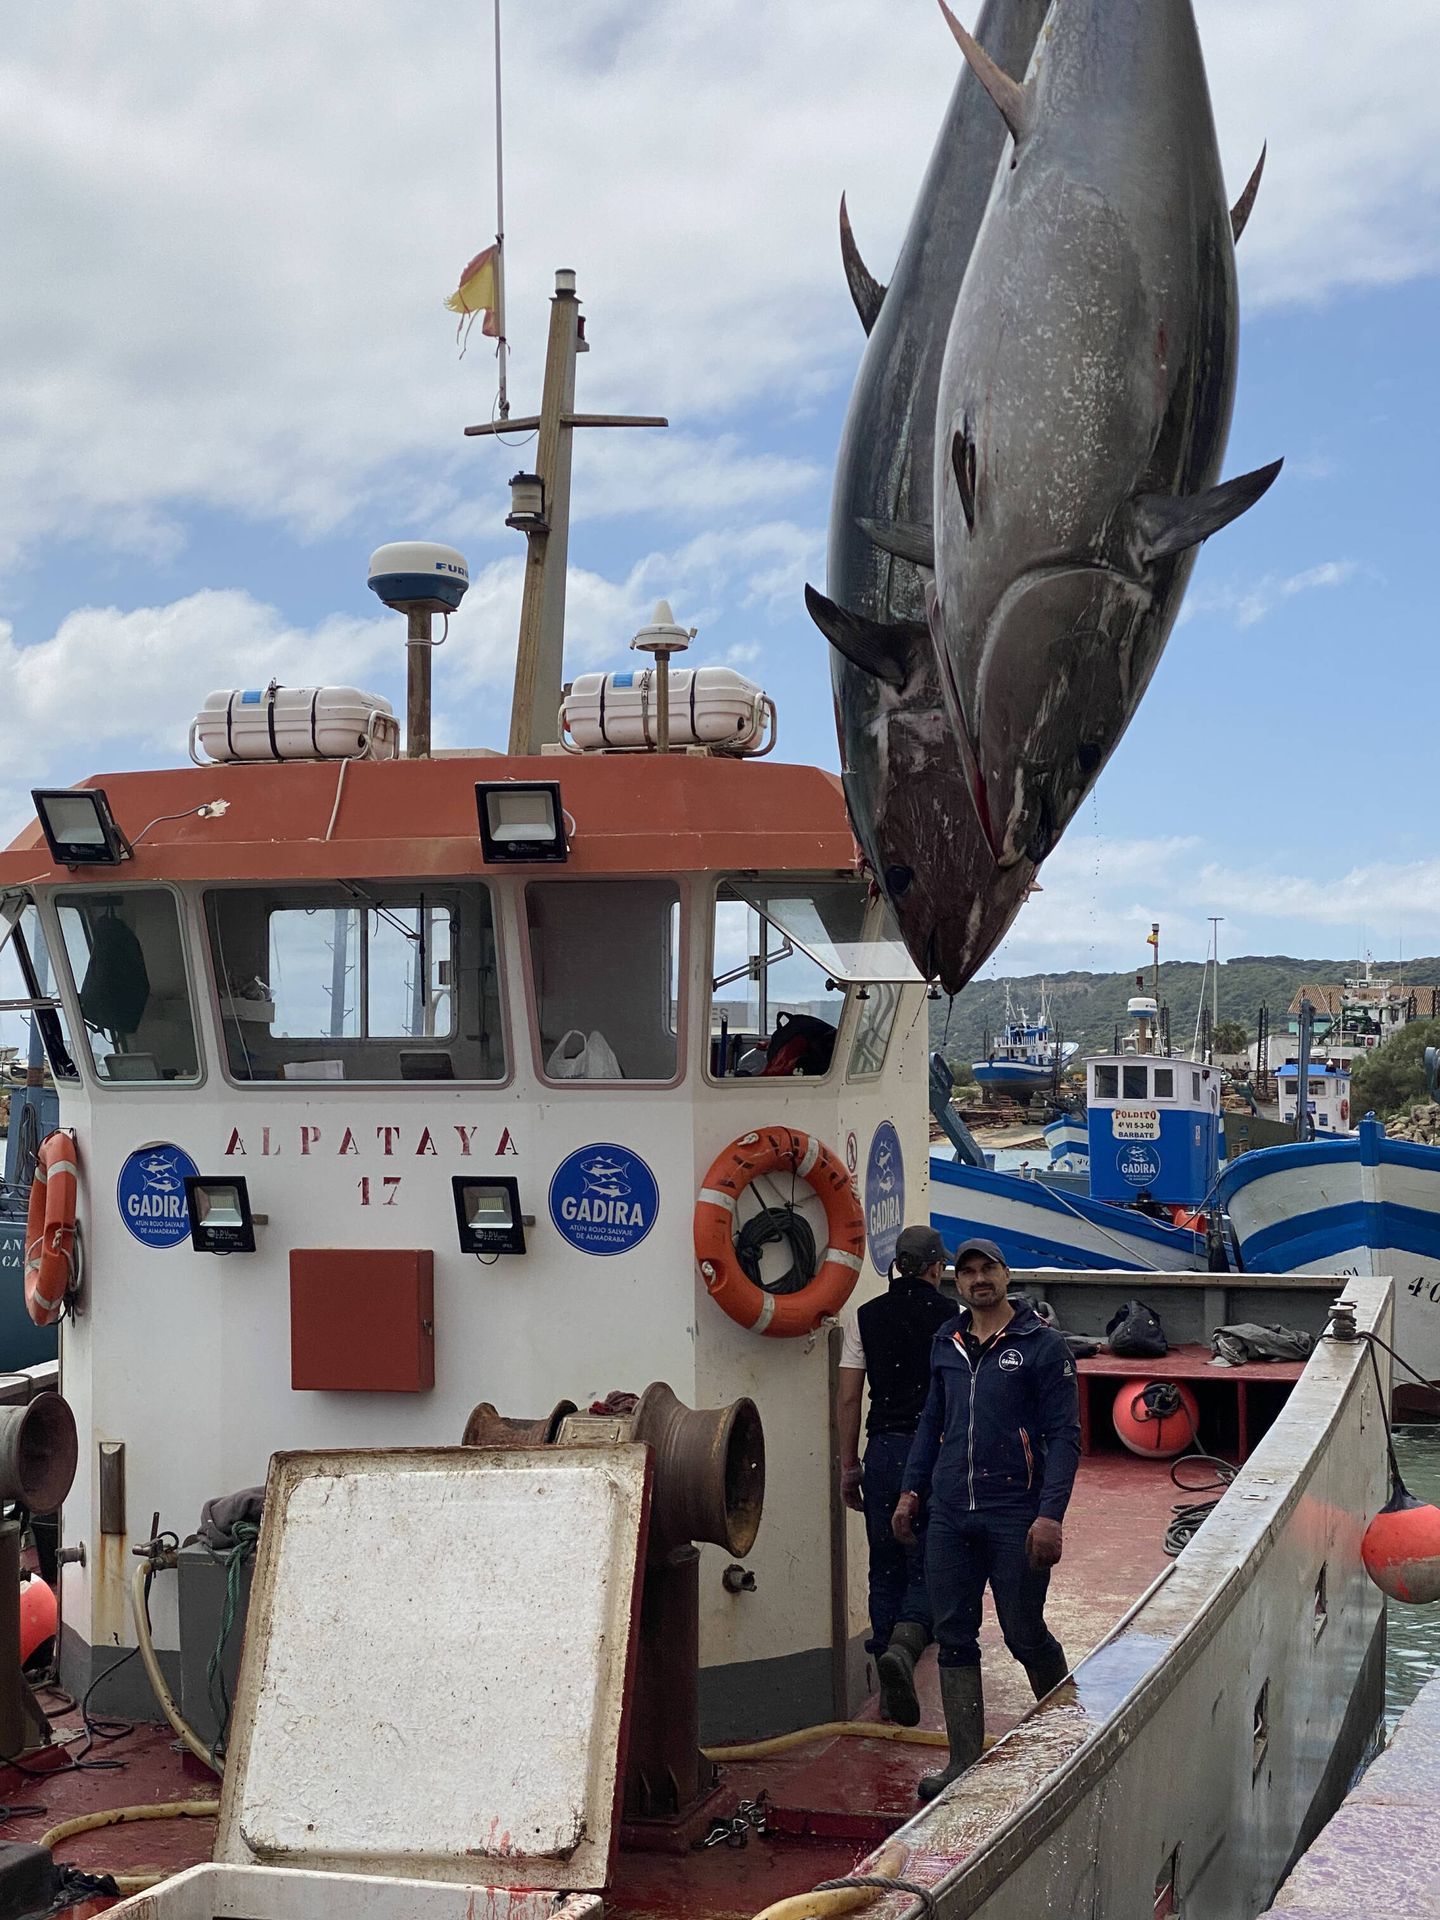 Dos atunes en la embarcación de pesca. (OPP51)